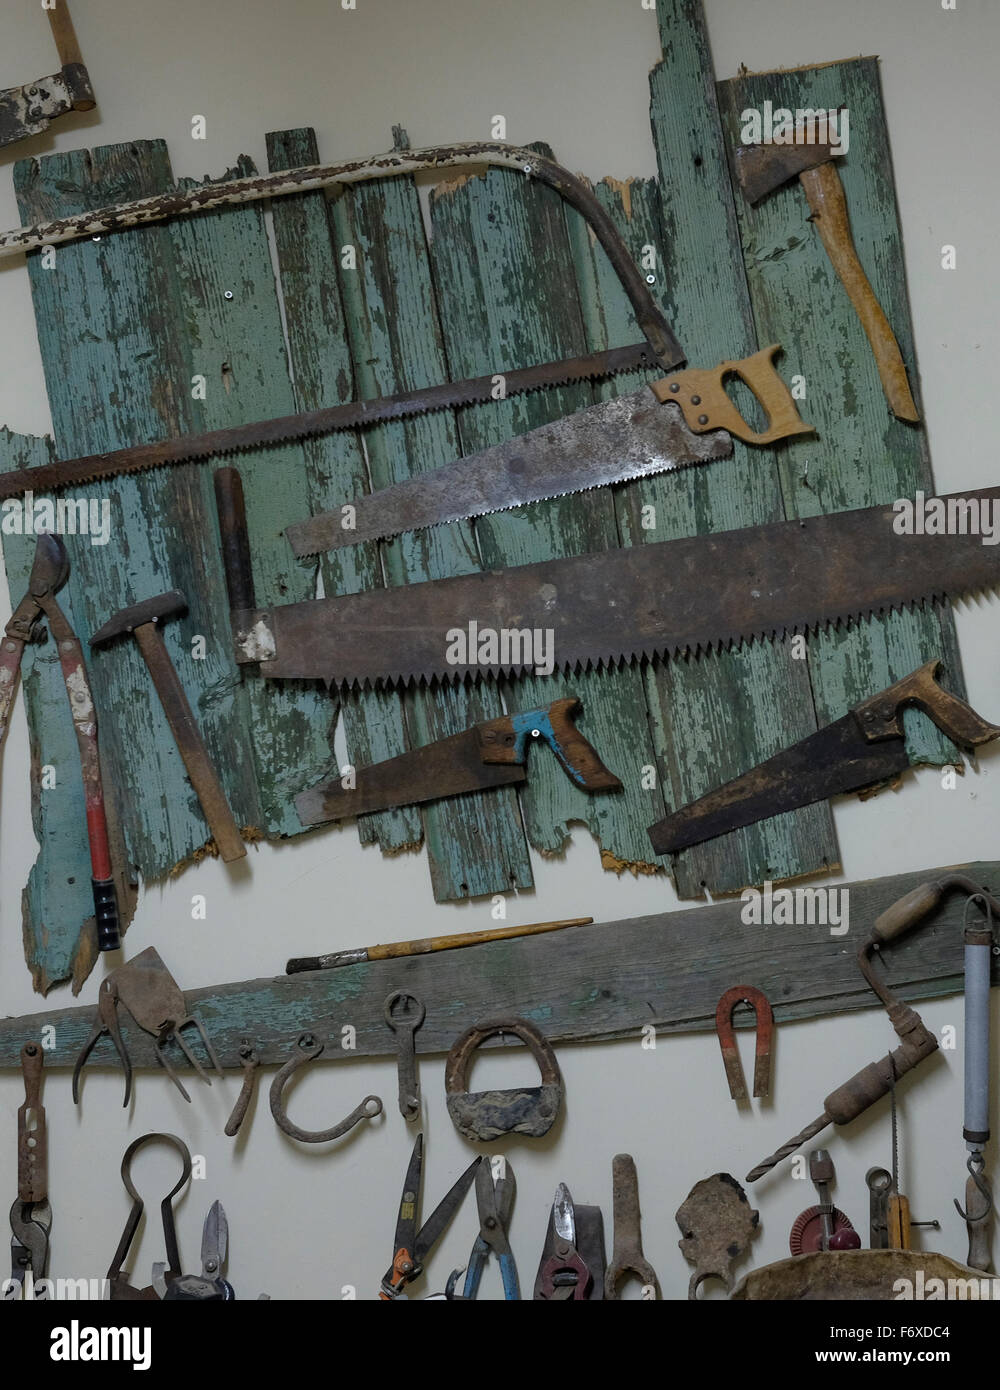 Colección de herramientas de carpintería Foto de stock